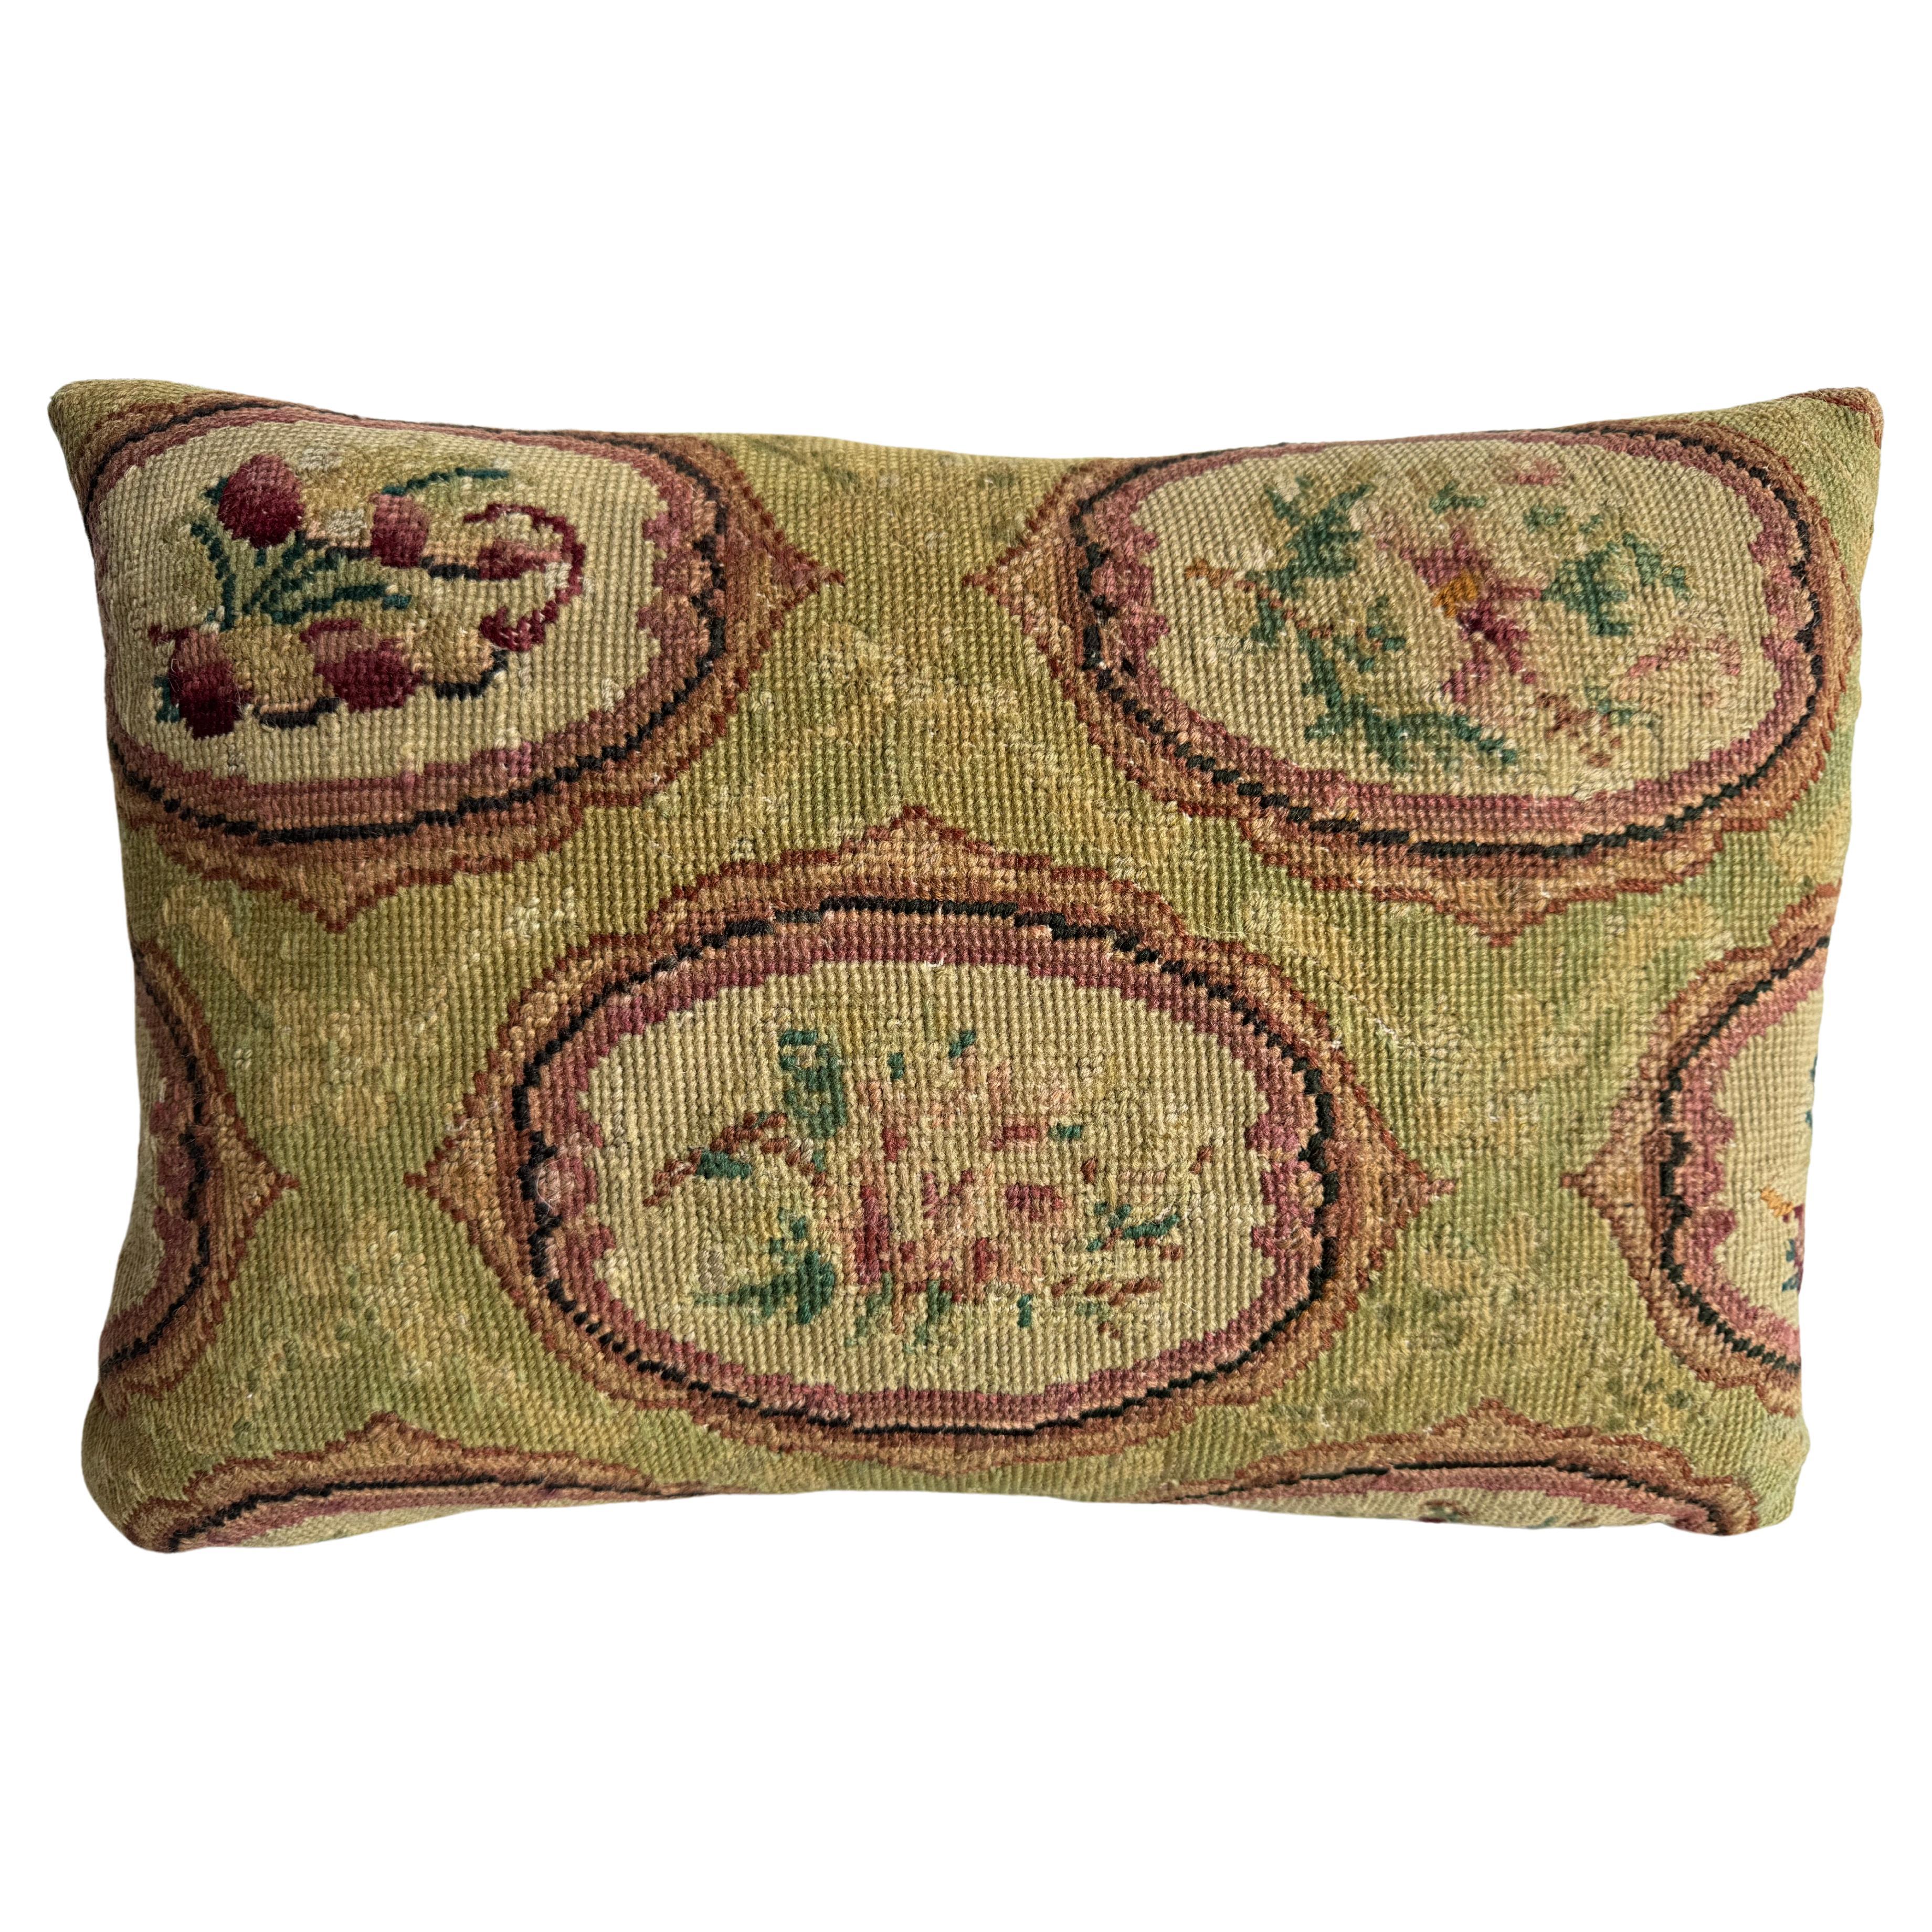 1852 English Needlework 17" x 12" Pillow